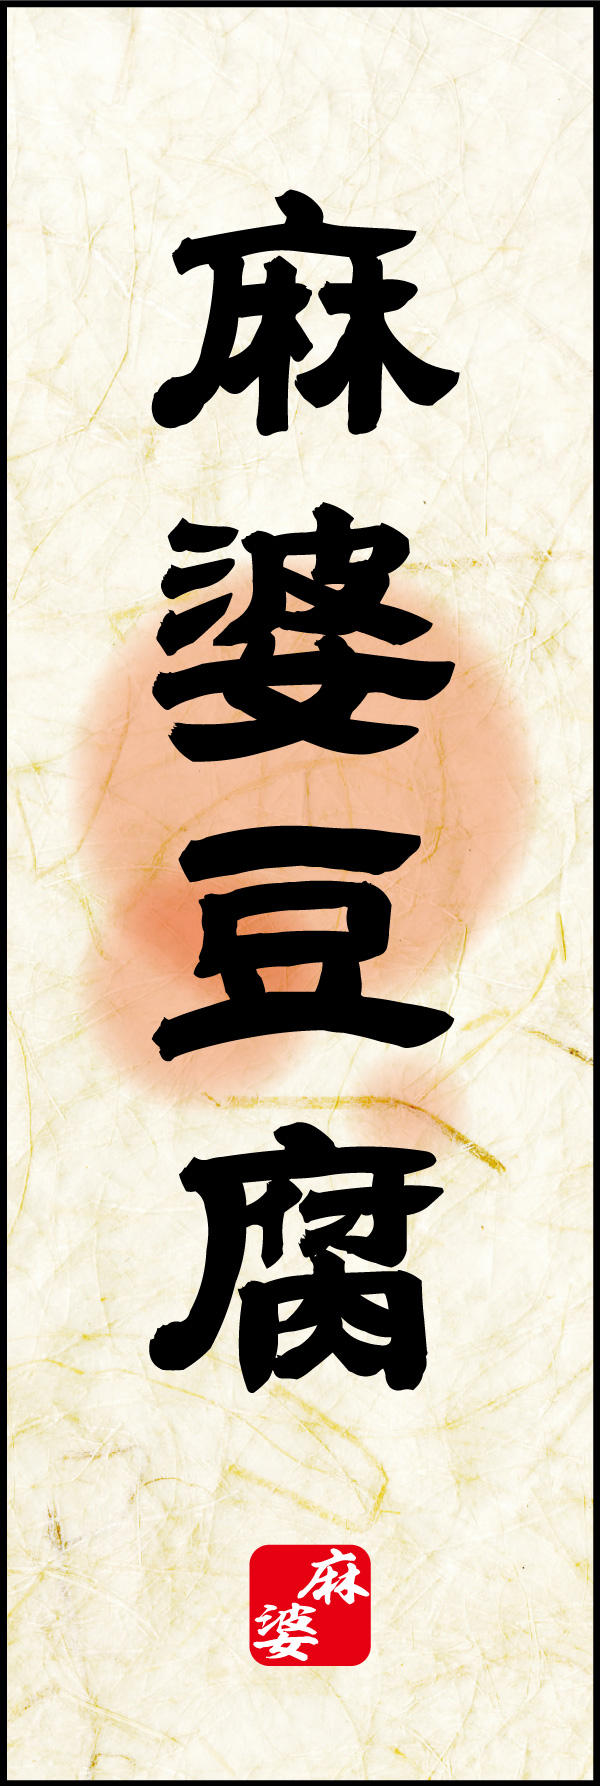 麻婆豆腐 02 「麻婆豆腐」ののぼりです。麻婆豆腐のイメージを素朴な風合いで表現してみました。(Y.M)